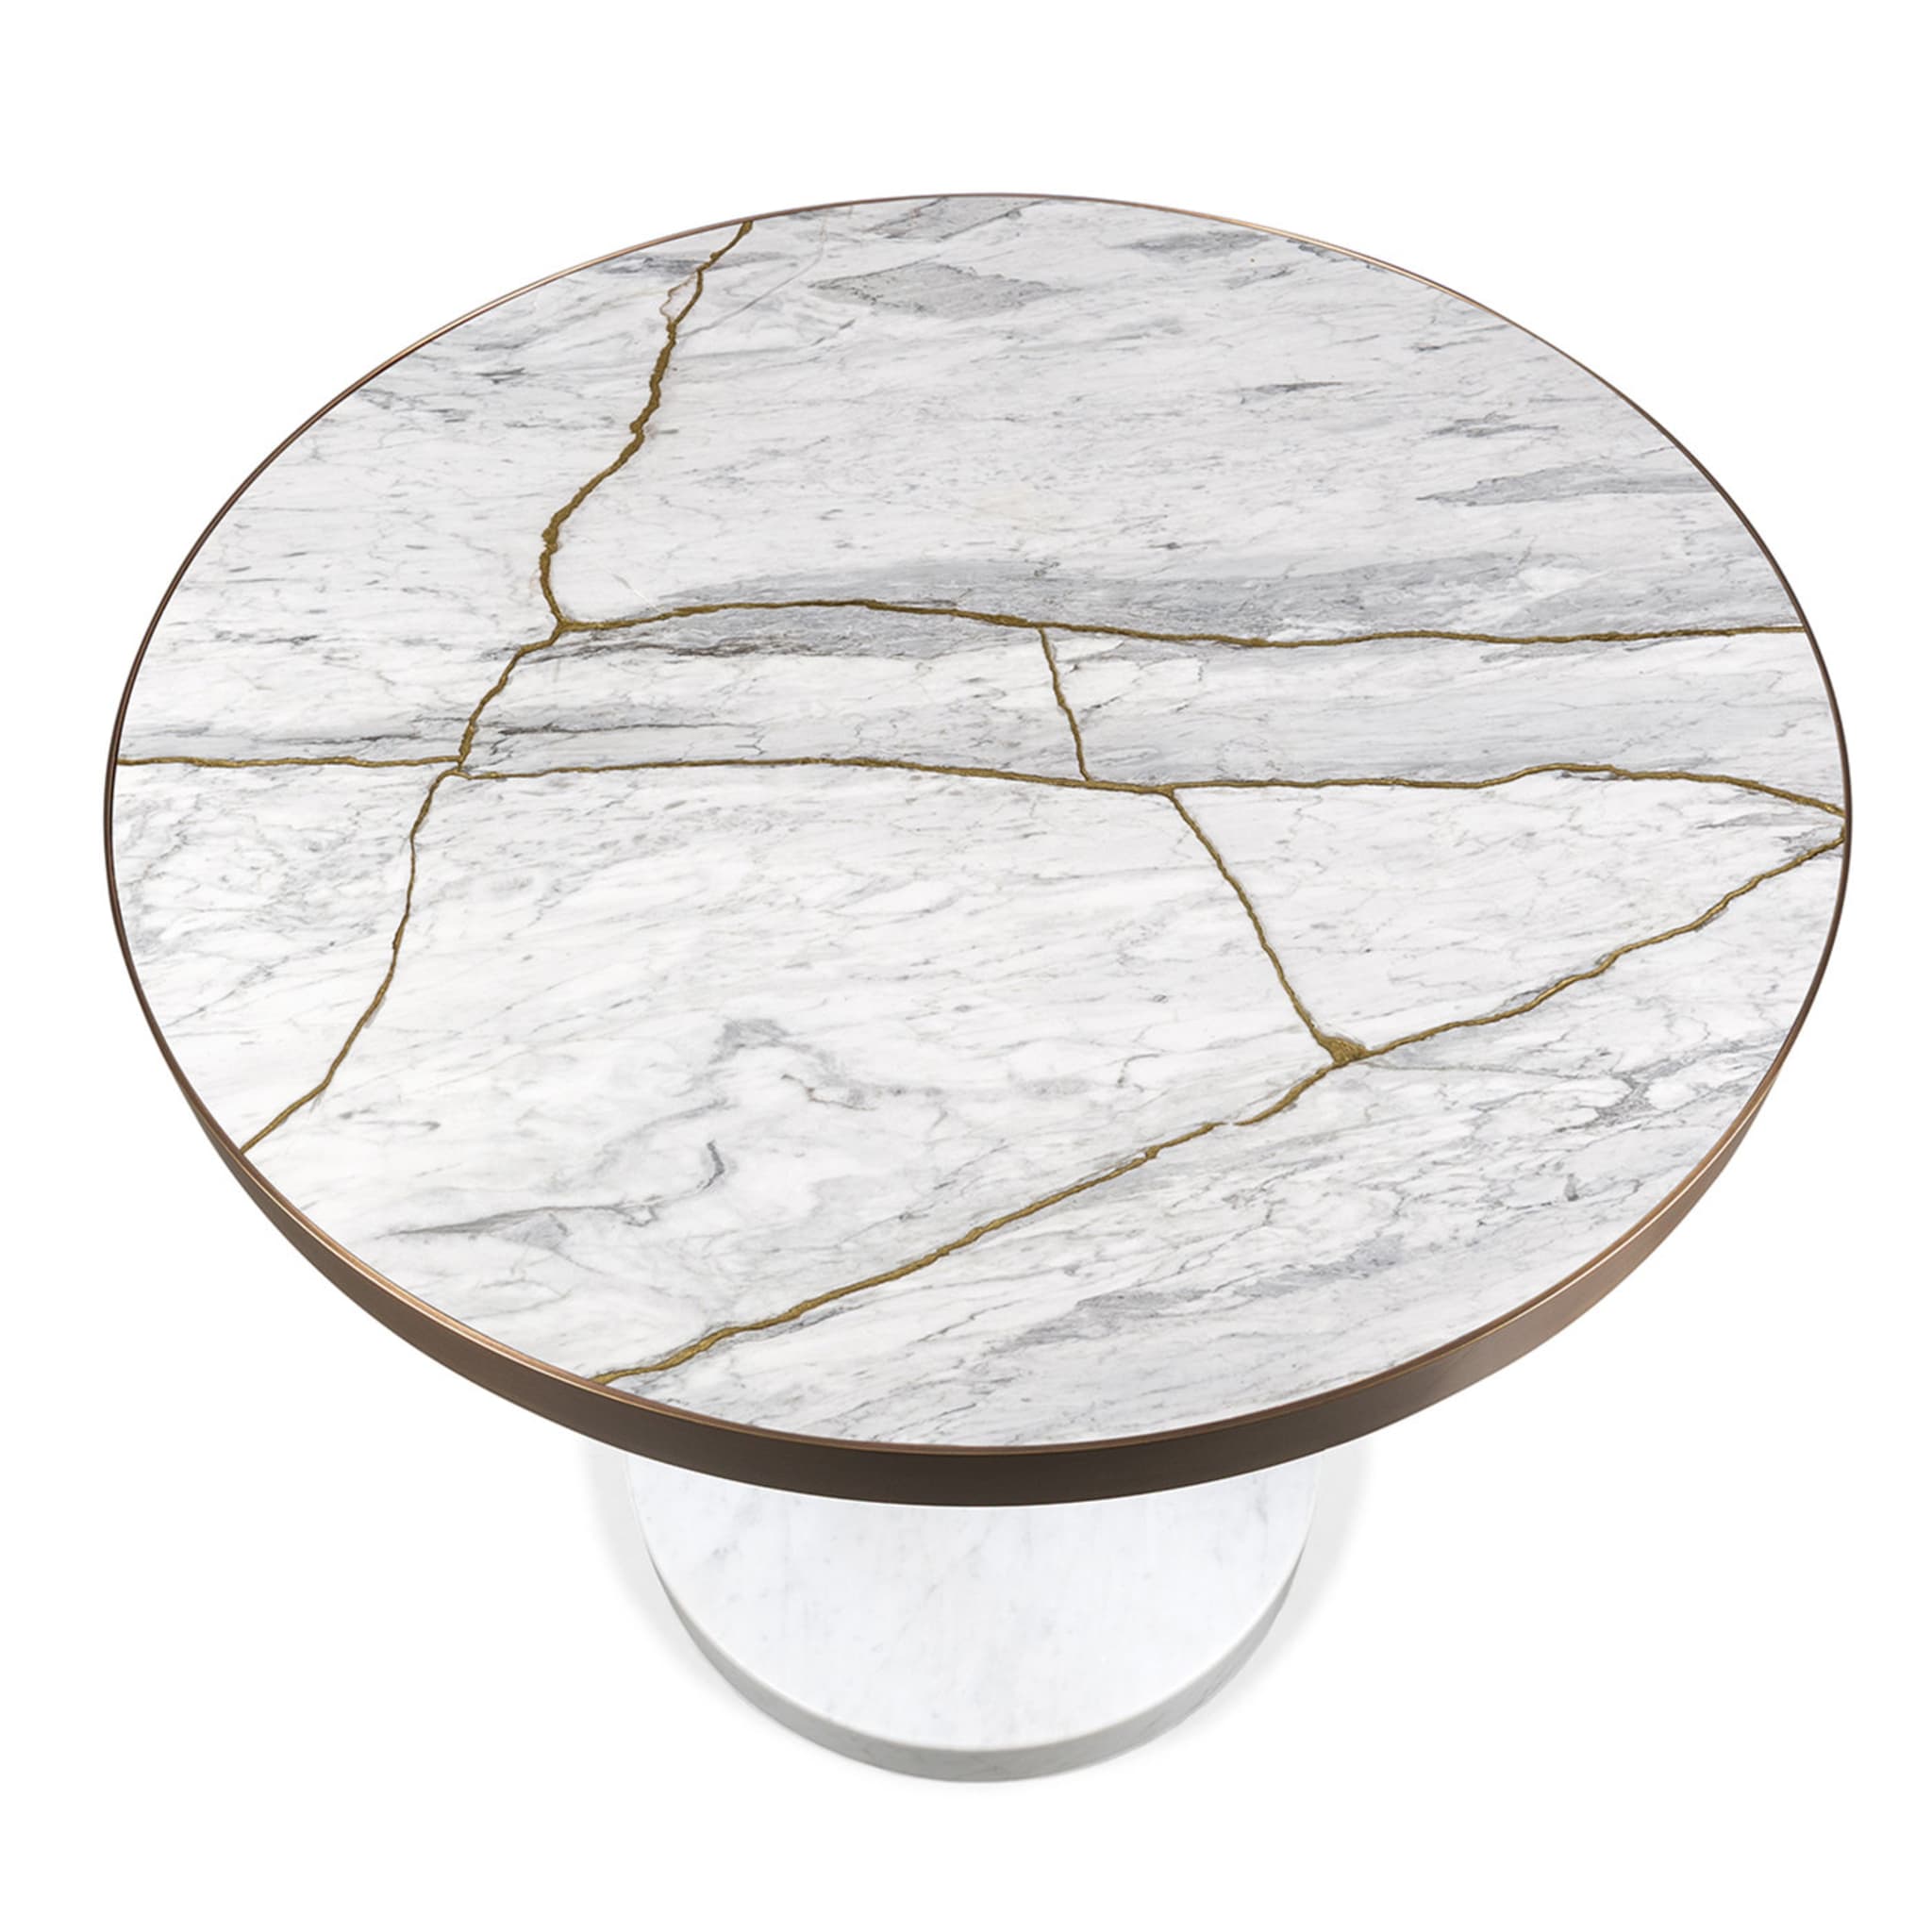 Rene Bistro Table in Bianco Nuvolato Lost Stone by Piero Lissoni - Alternative view 2